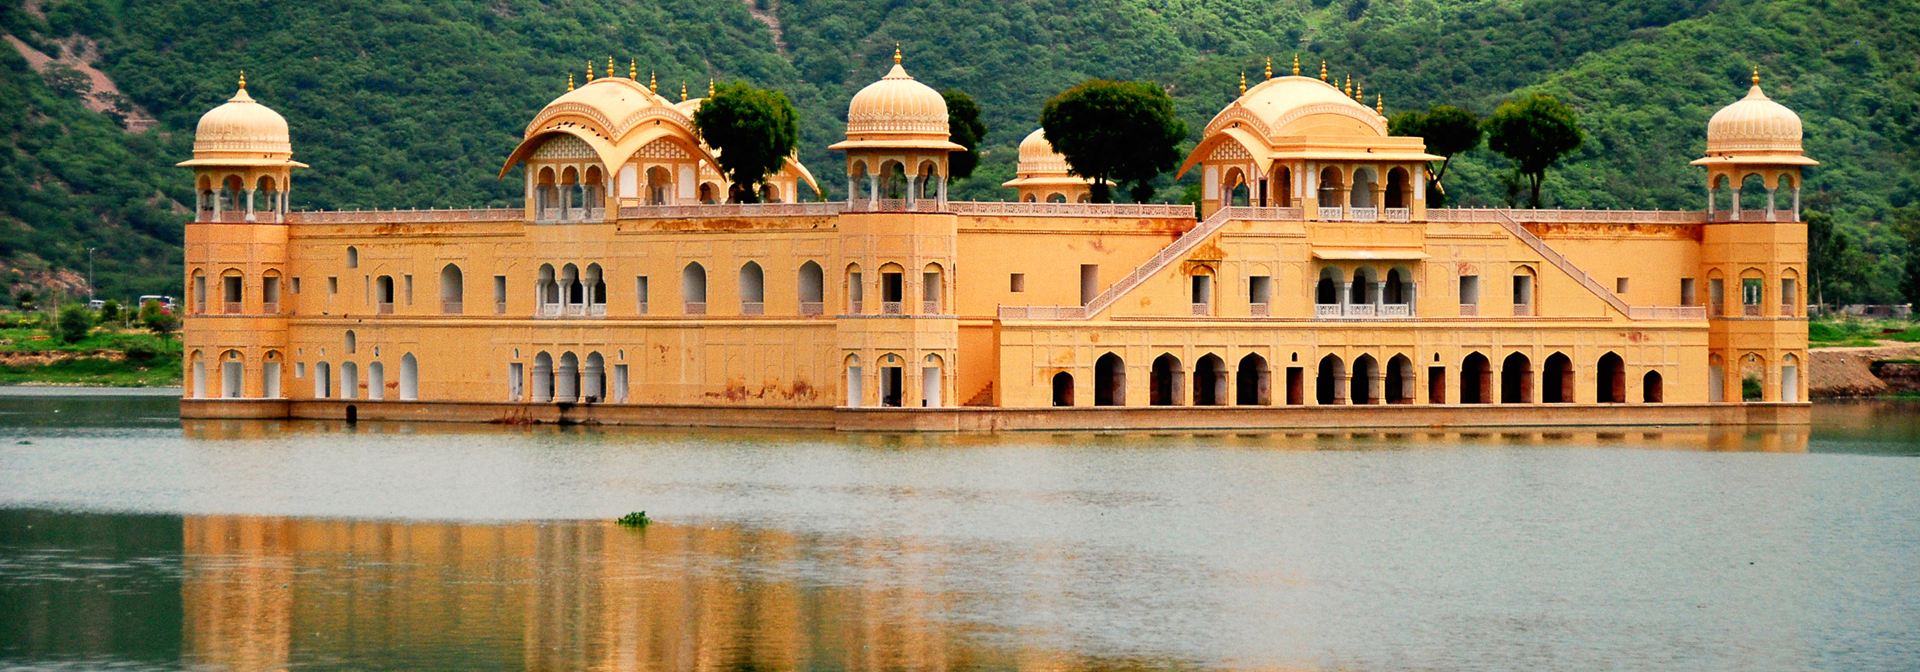 Indien - jaipur_water palace_01